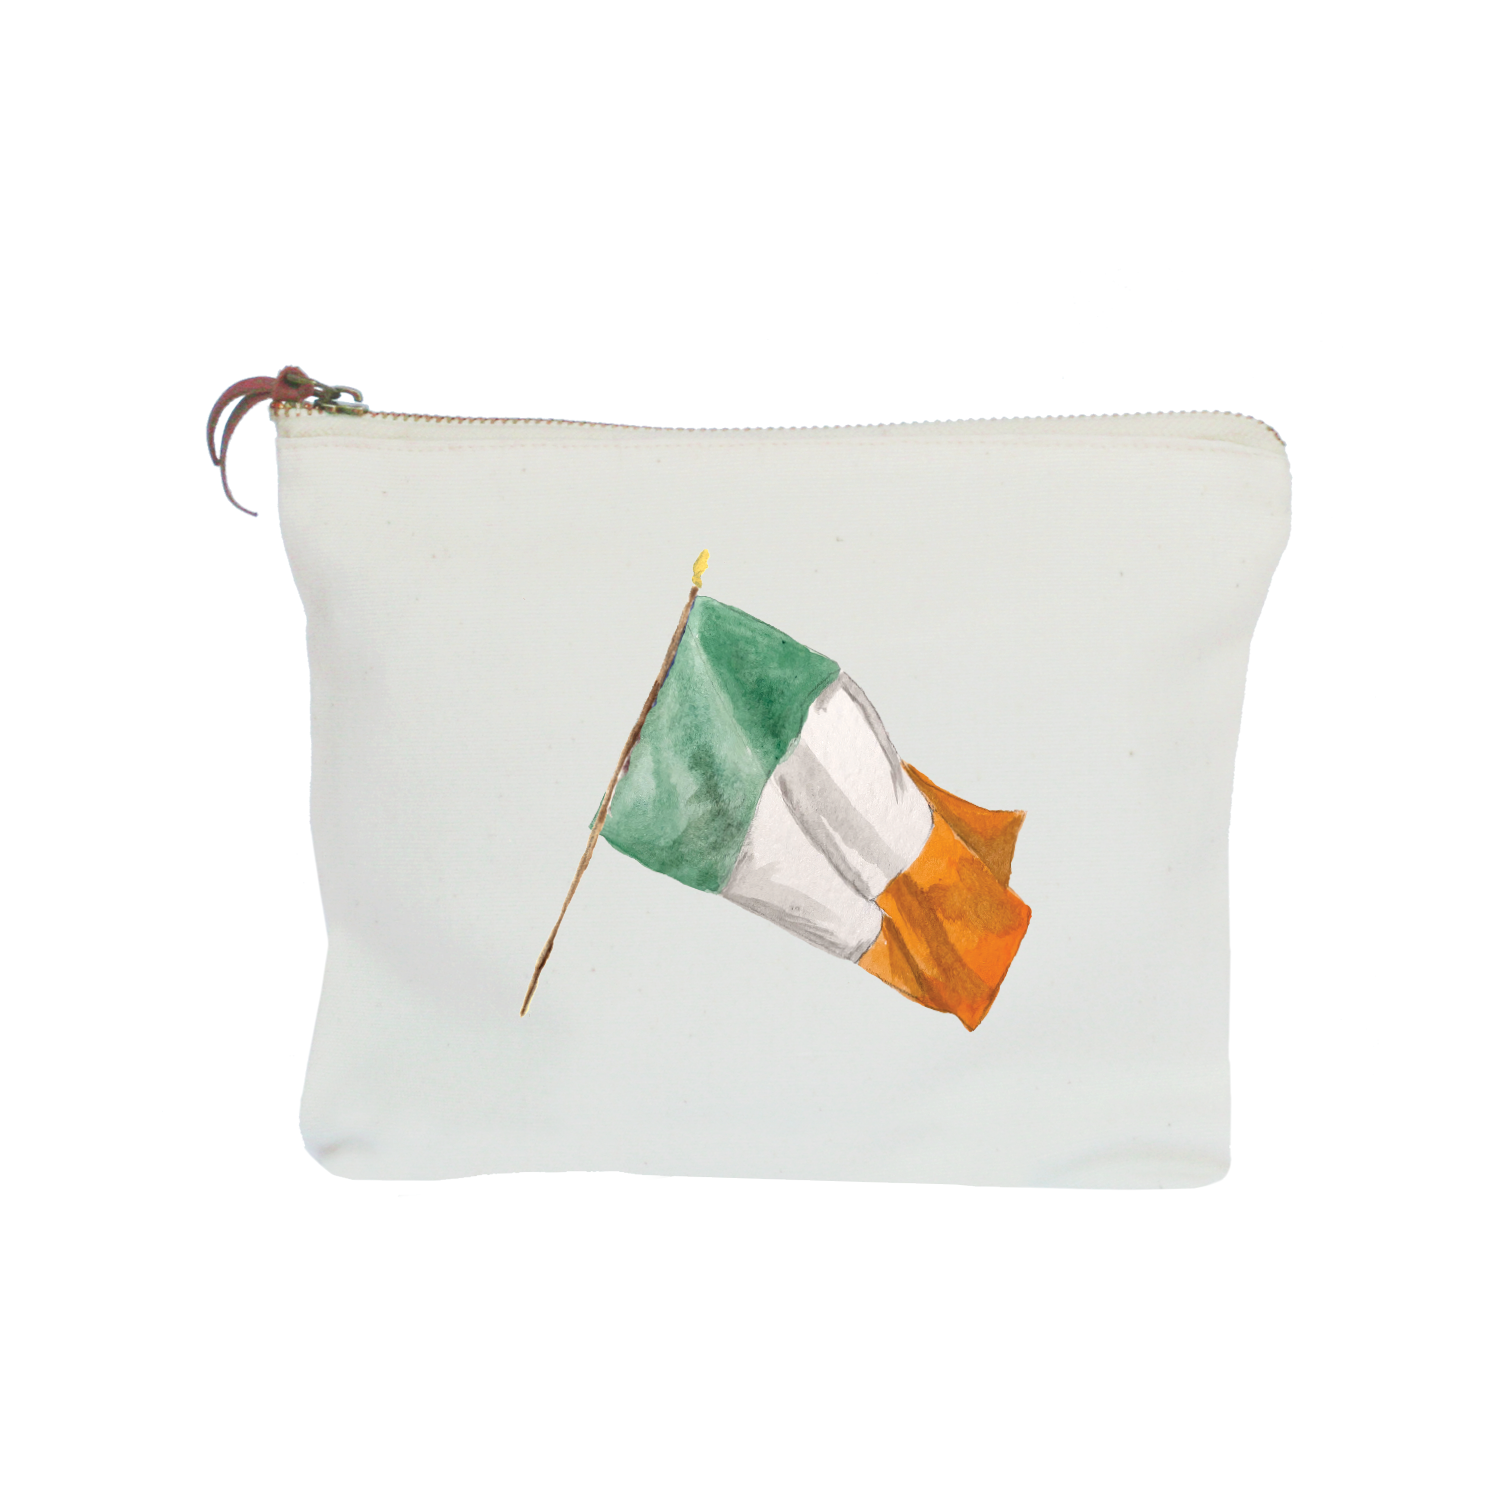 ireland flag zipper pouch